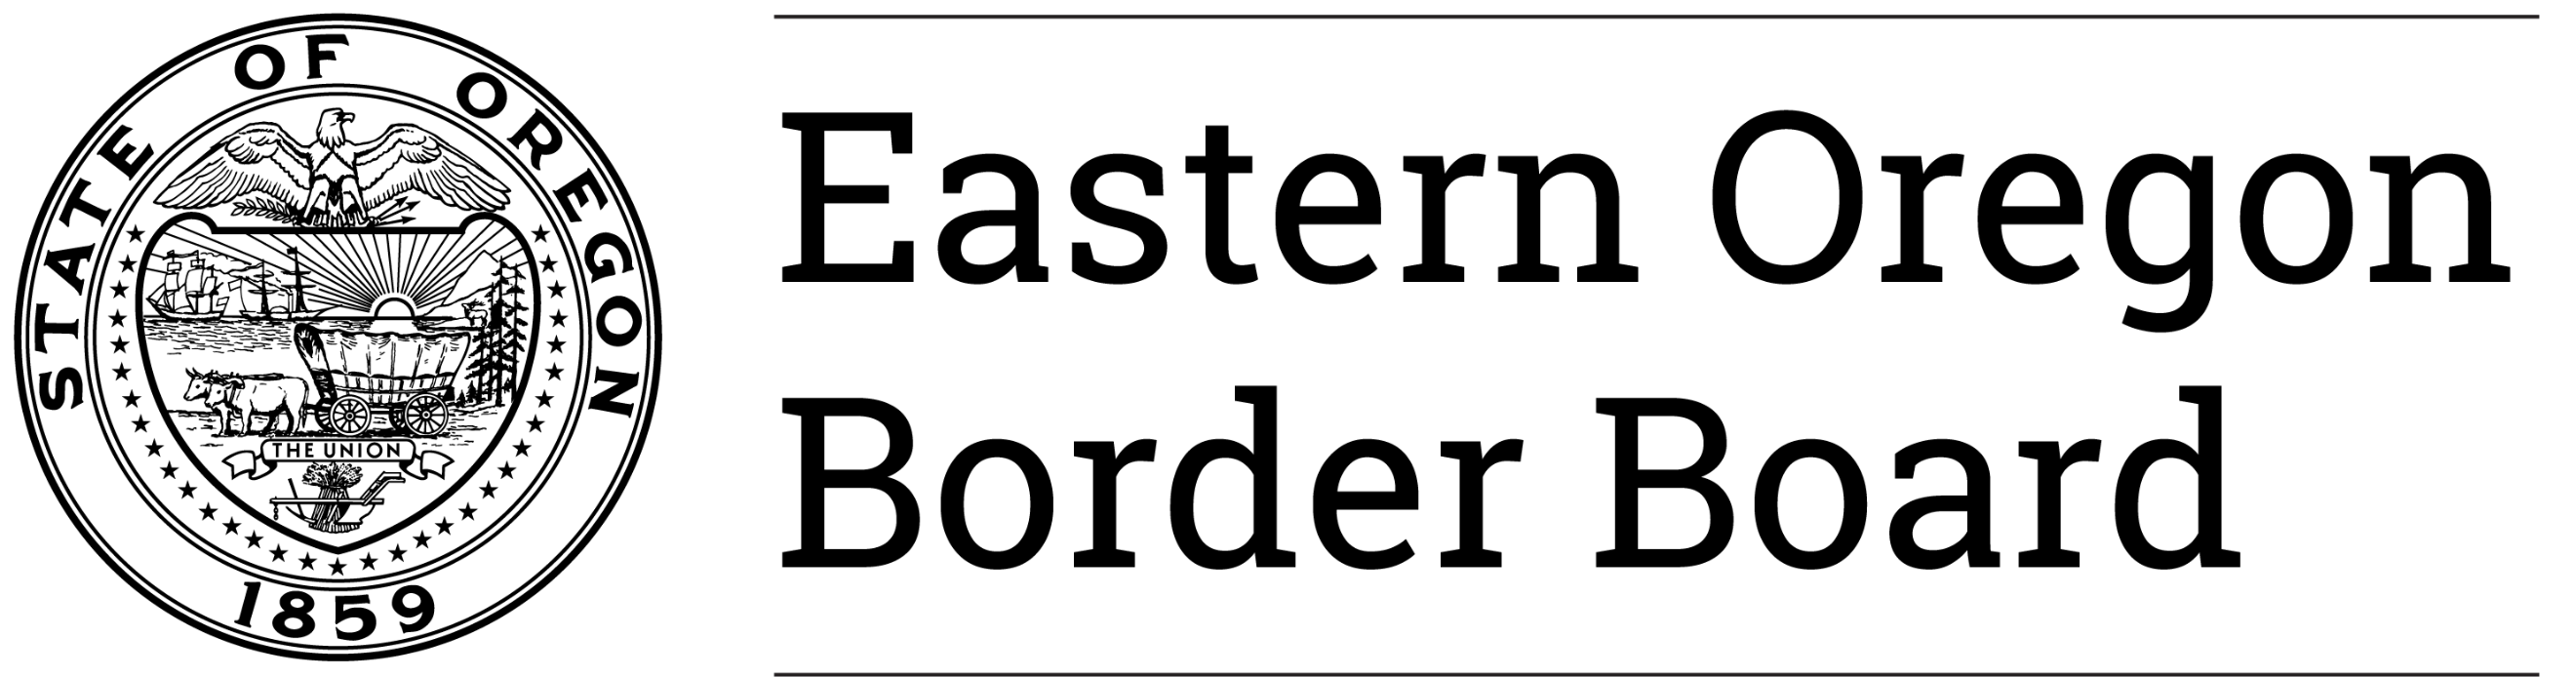 Eastern Oregon Border Board